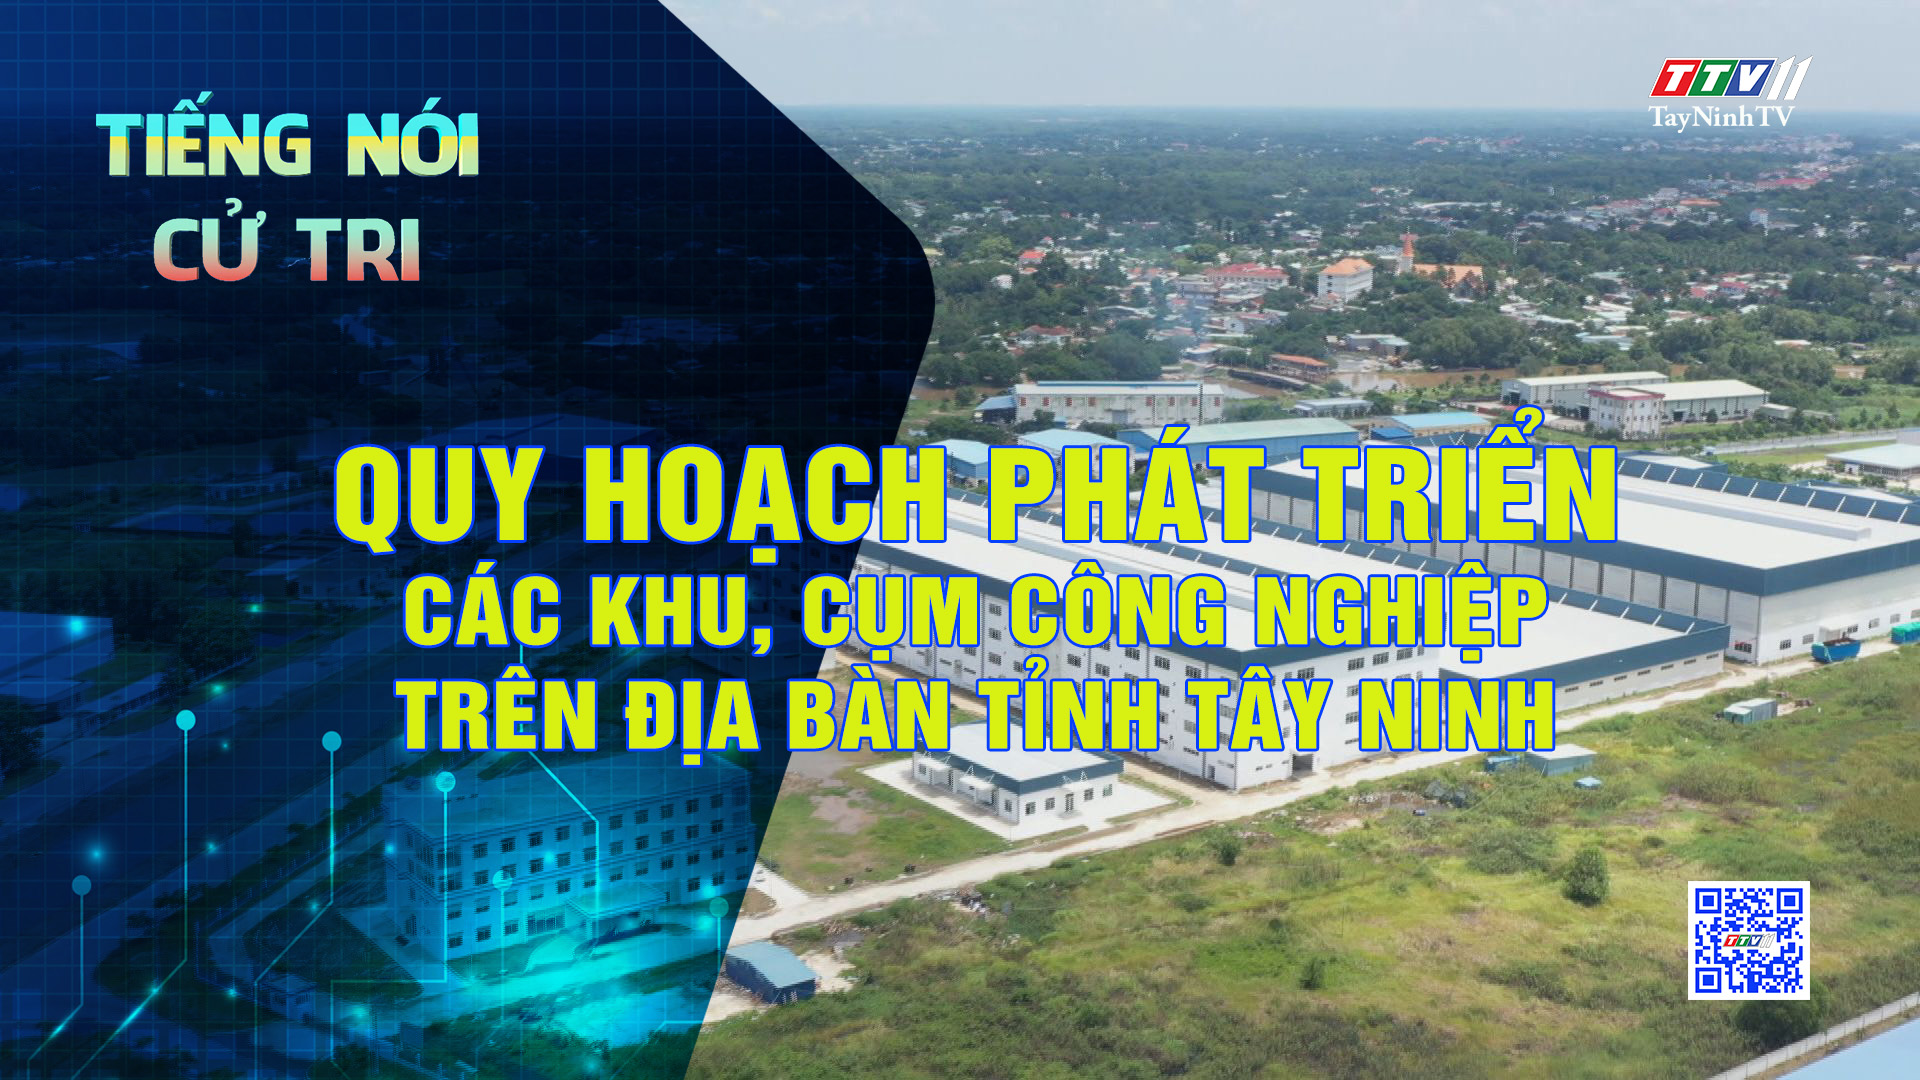 Quy hoạch phát triển các khu, cụm công nghiệp trên địa bàn tỉnh Tây Ninh | TIẾNG NÓI CỬ TRI | TayNinhTV